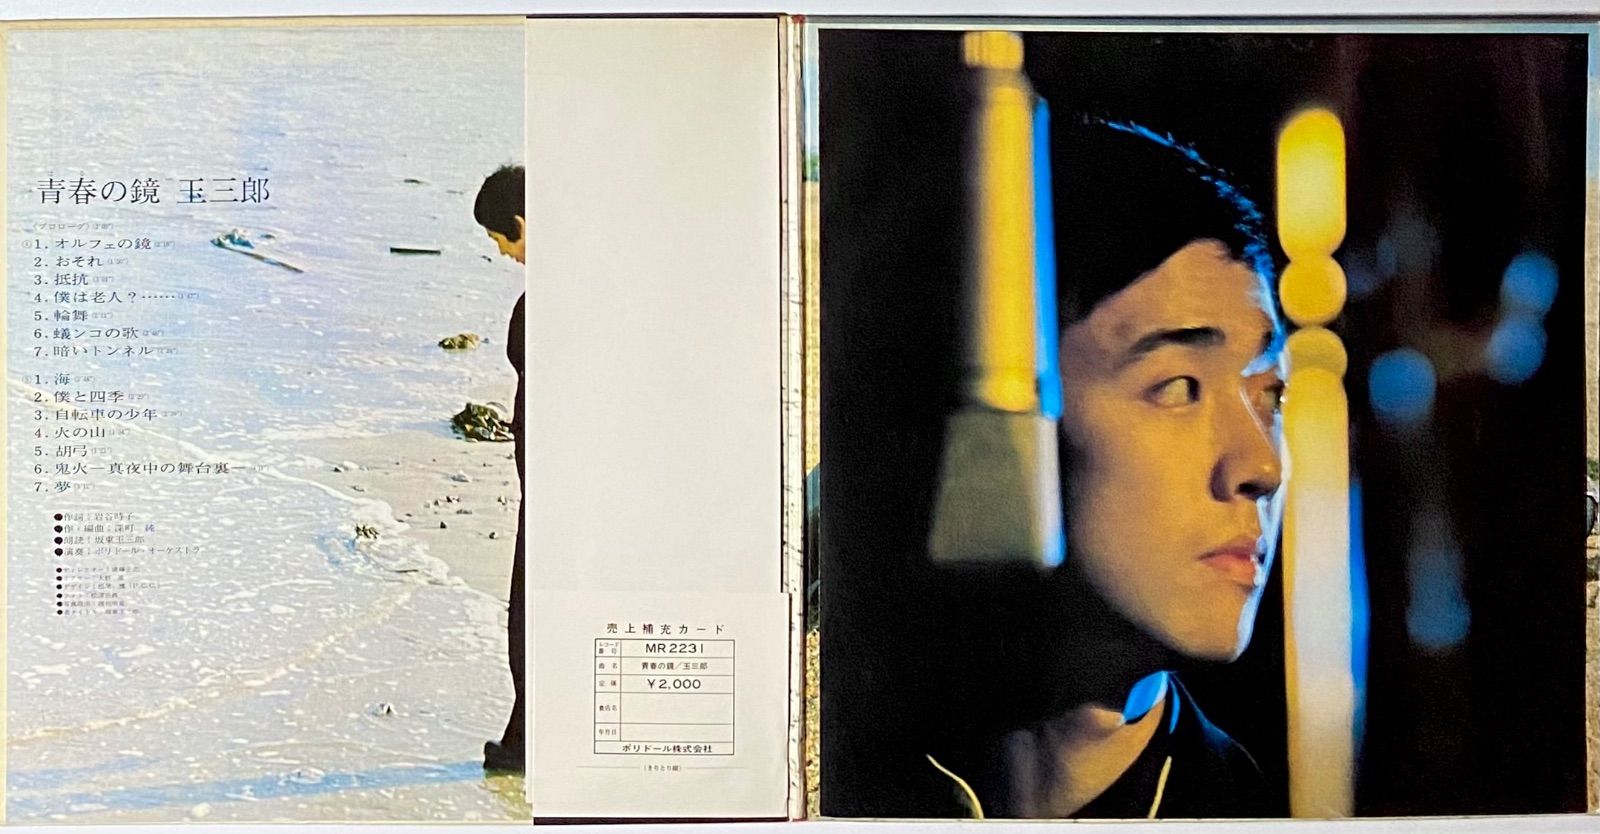 坂東玉三郎 『青春の鏡』 LP MR 2231